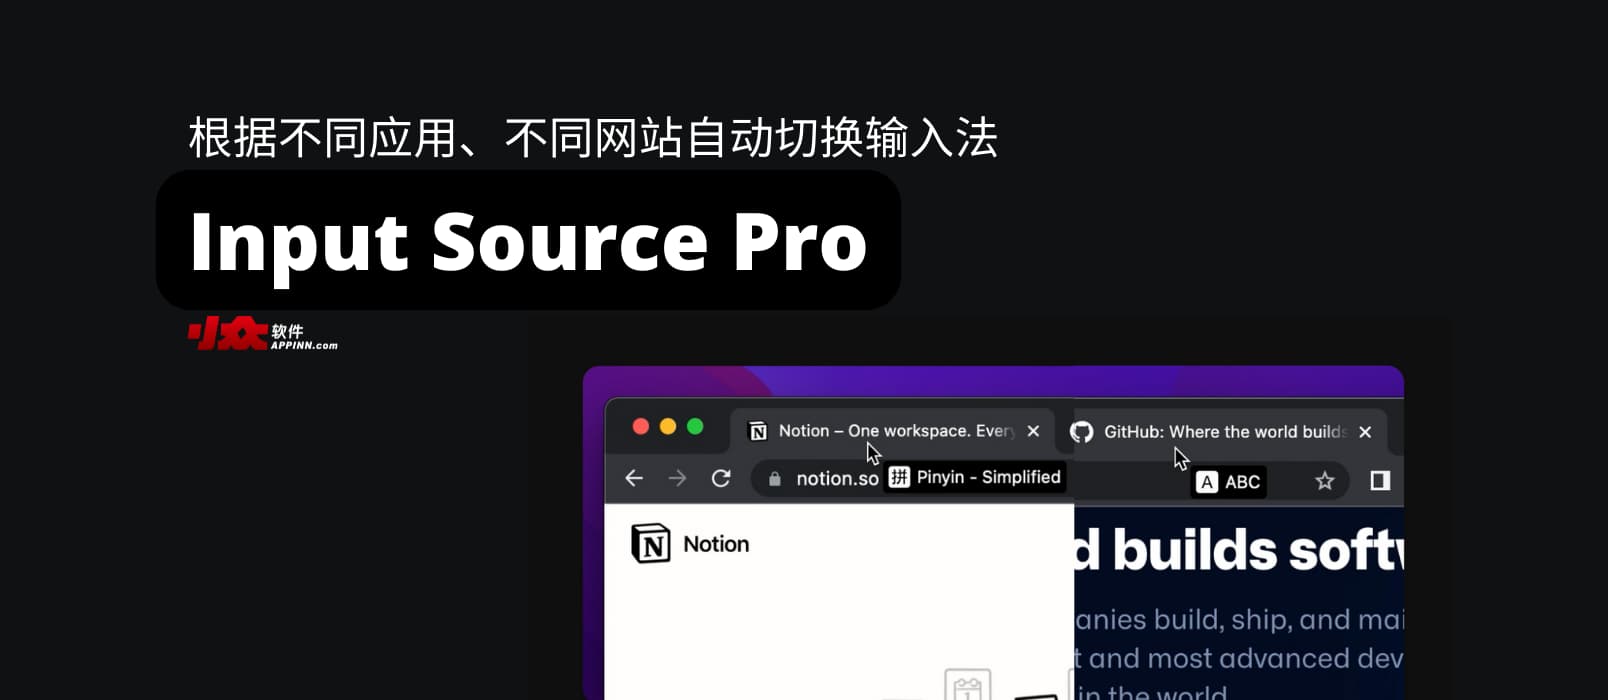 Input Source Pro - 根据不同应用、不同网站自动切换输入法，并提示当前输入法状态[macOS]
